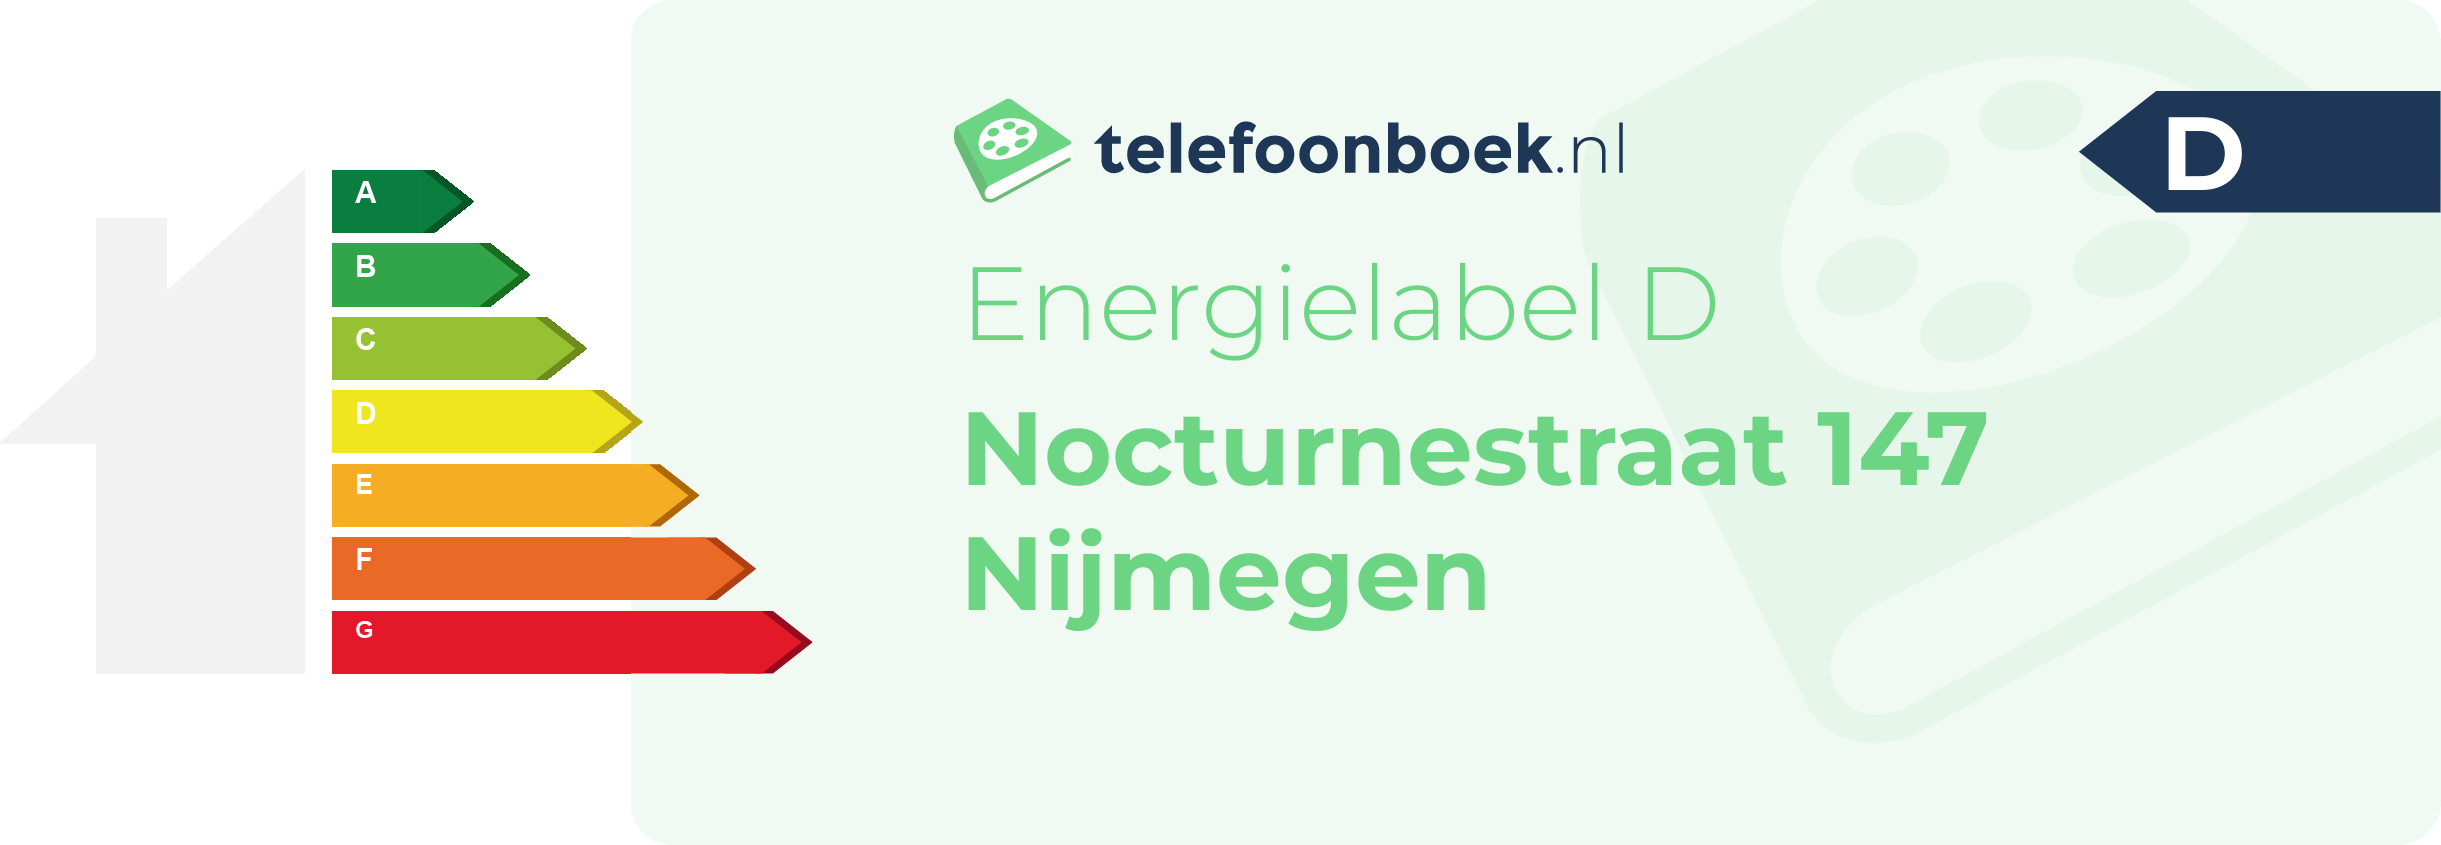 Energielabel Nocturnestraat 147 Nijmegen